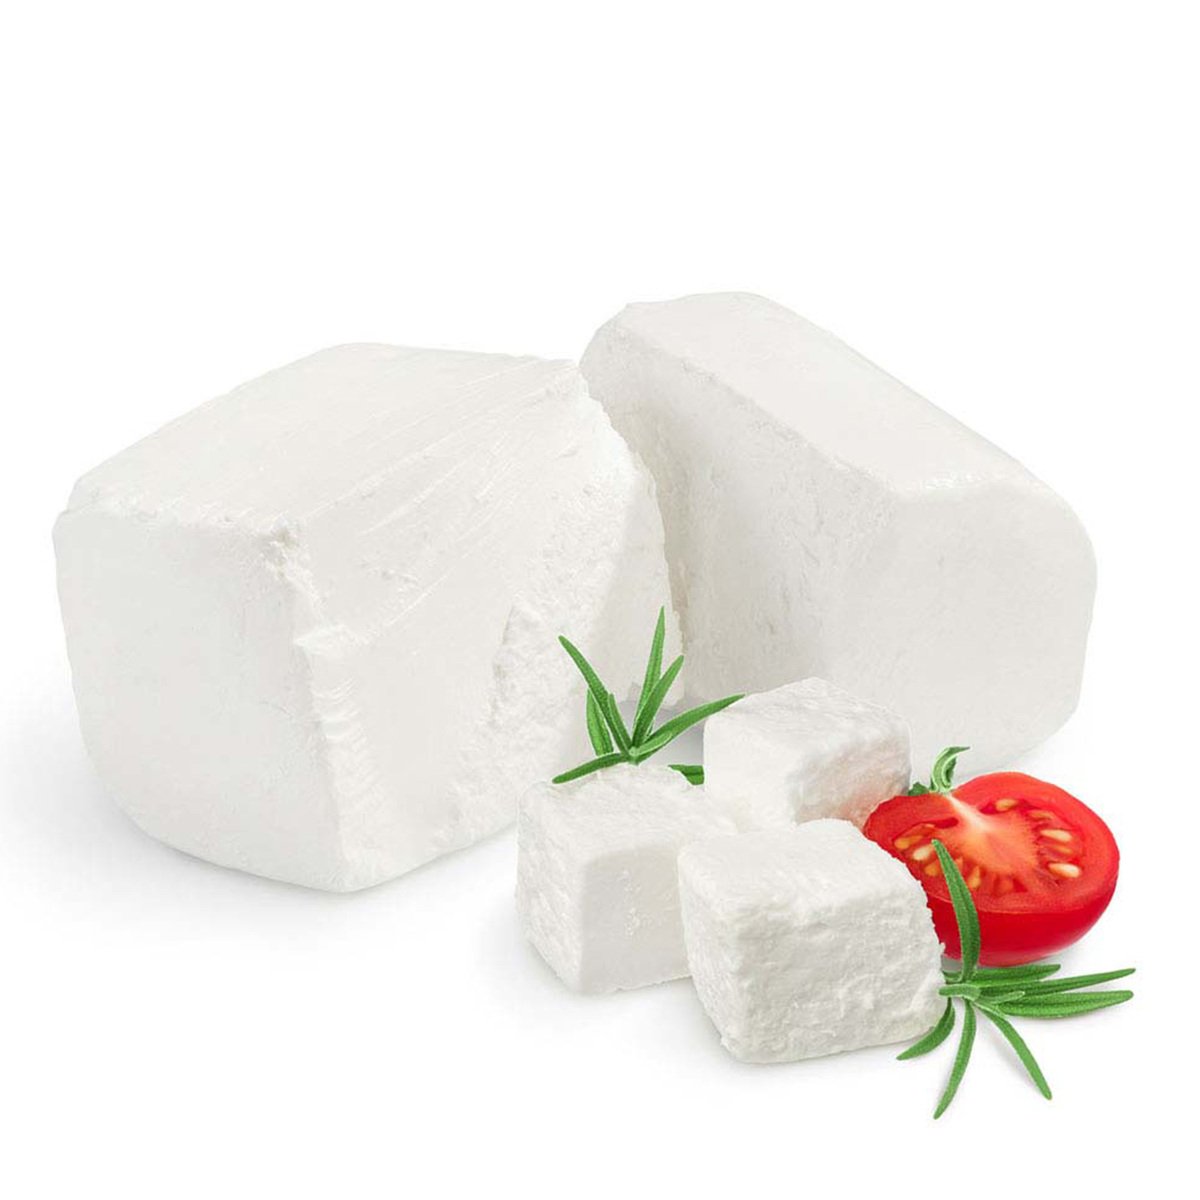 اشتري قم بشراء جبنة قريش مصرية 250 جم Online at Best Price من الموقع - من لولو هايبر ماركت White Cheese في مصر